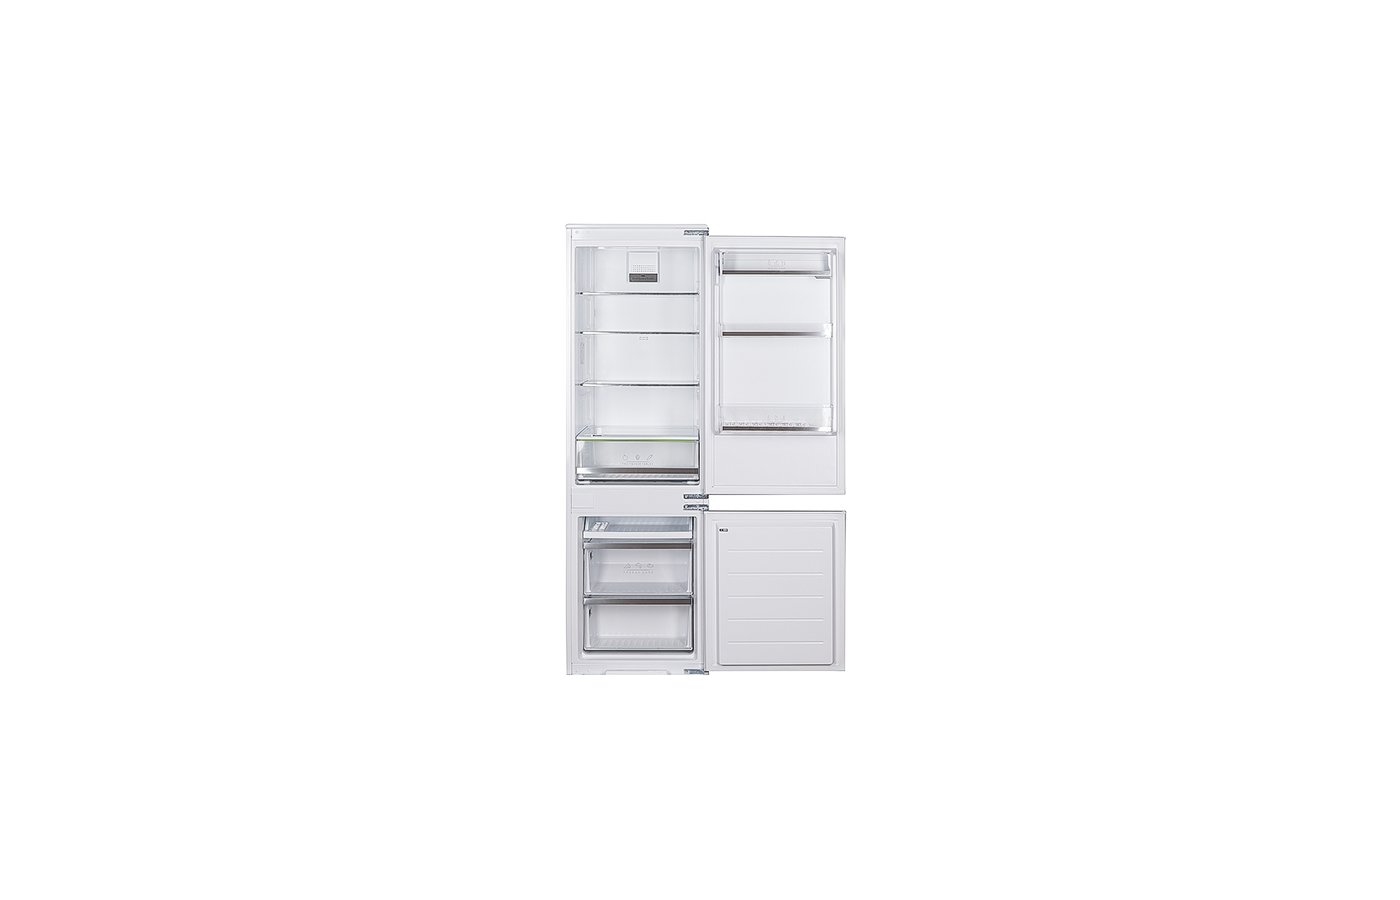 Встраиваемый холодильник Leran bir 2705 NF. Встраиваемый холодильник Leran bir 2705 NF, белый. Встраиваемый холодильник Leran bir 2705 NF схема встраивания.